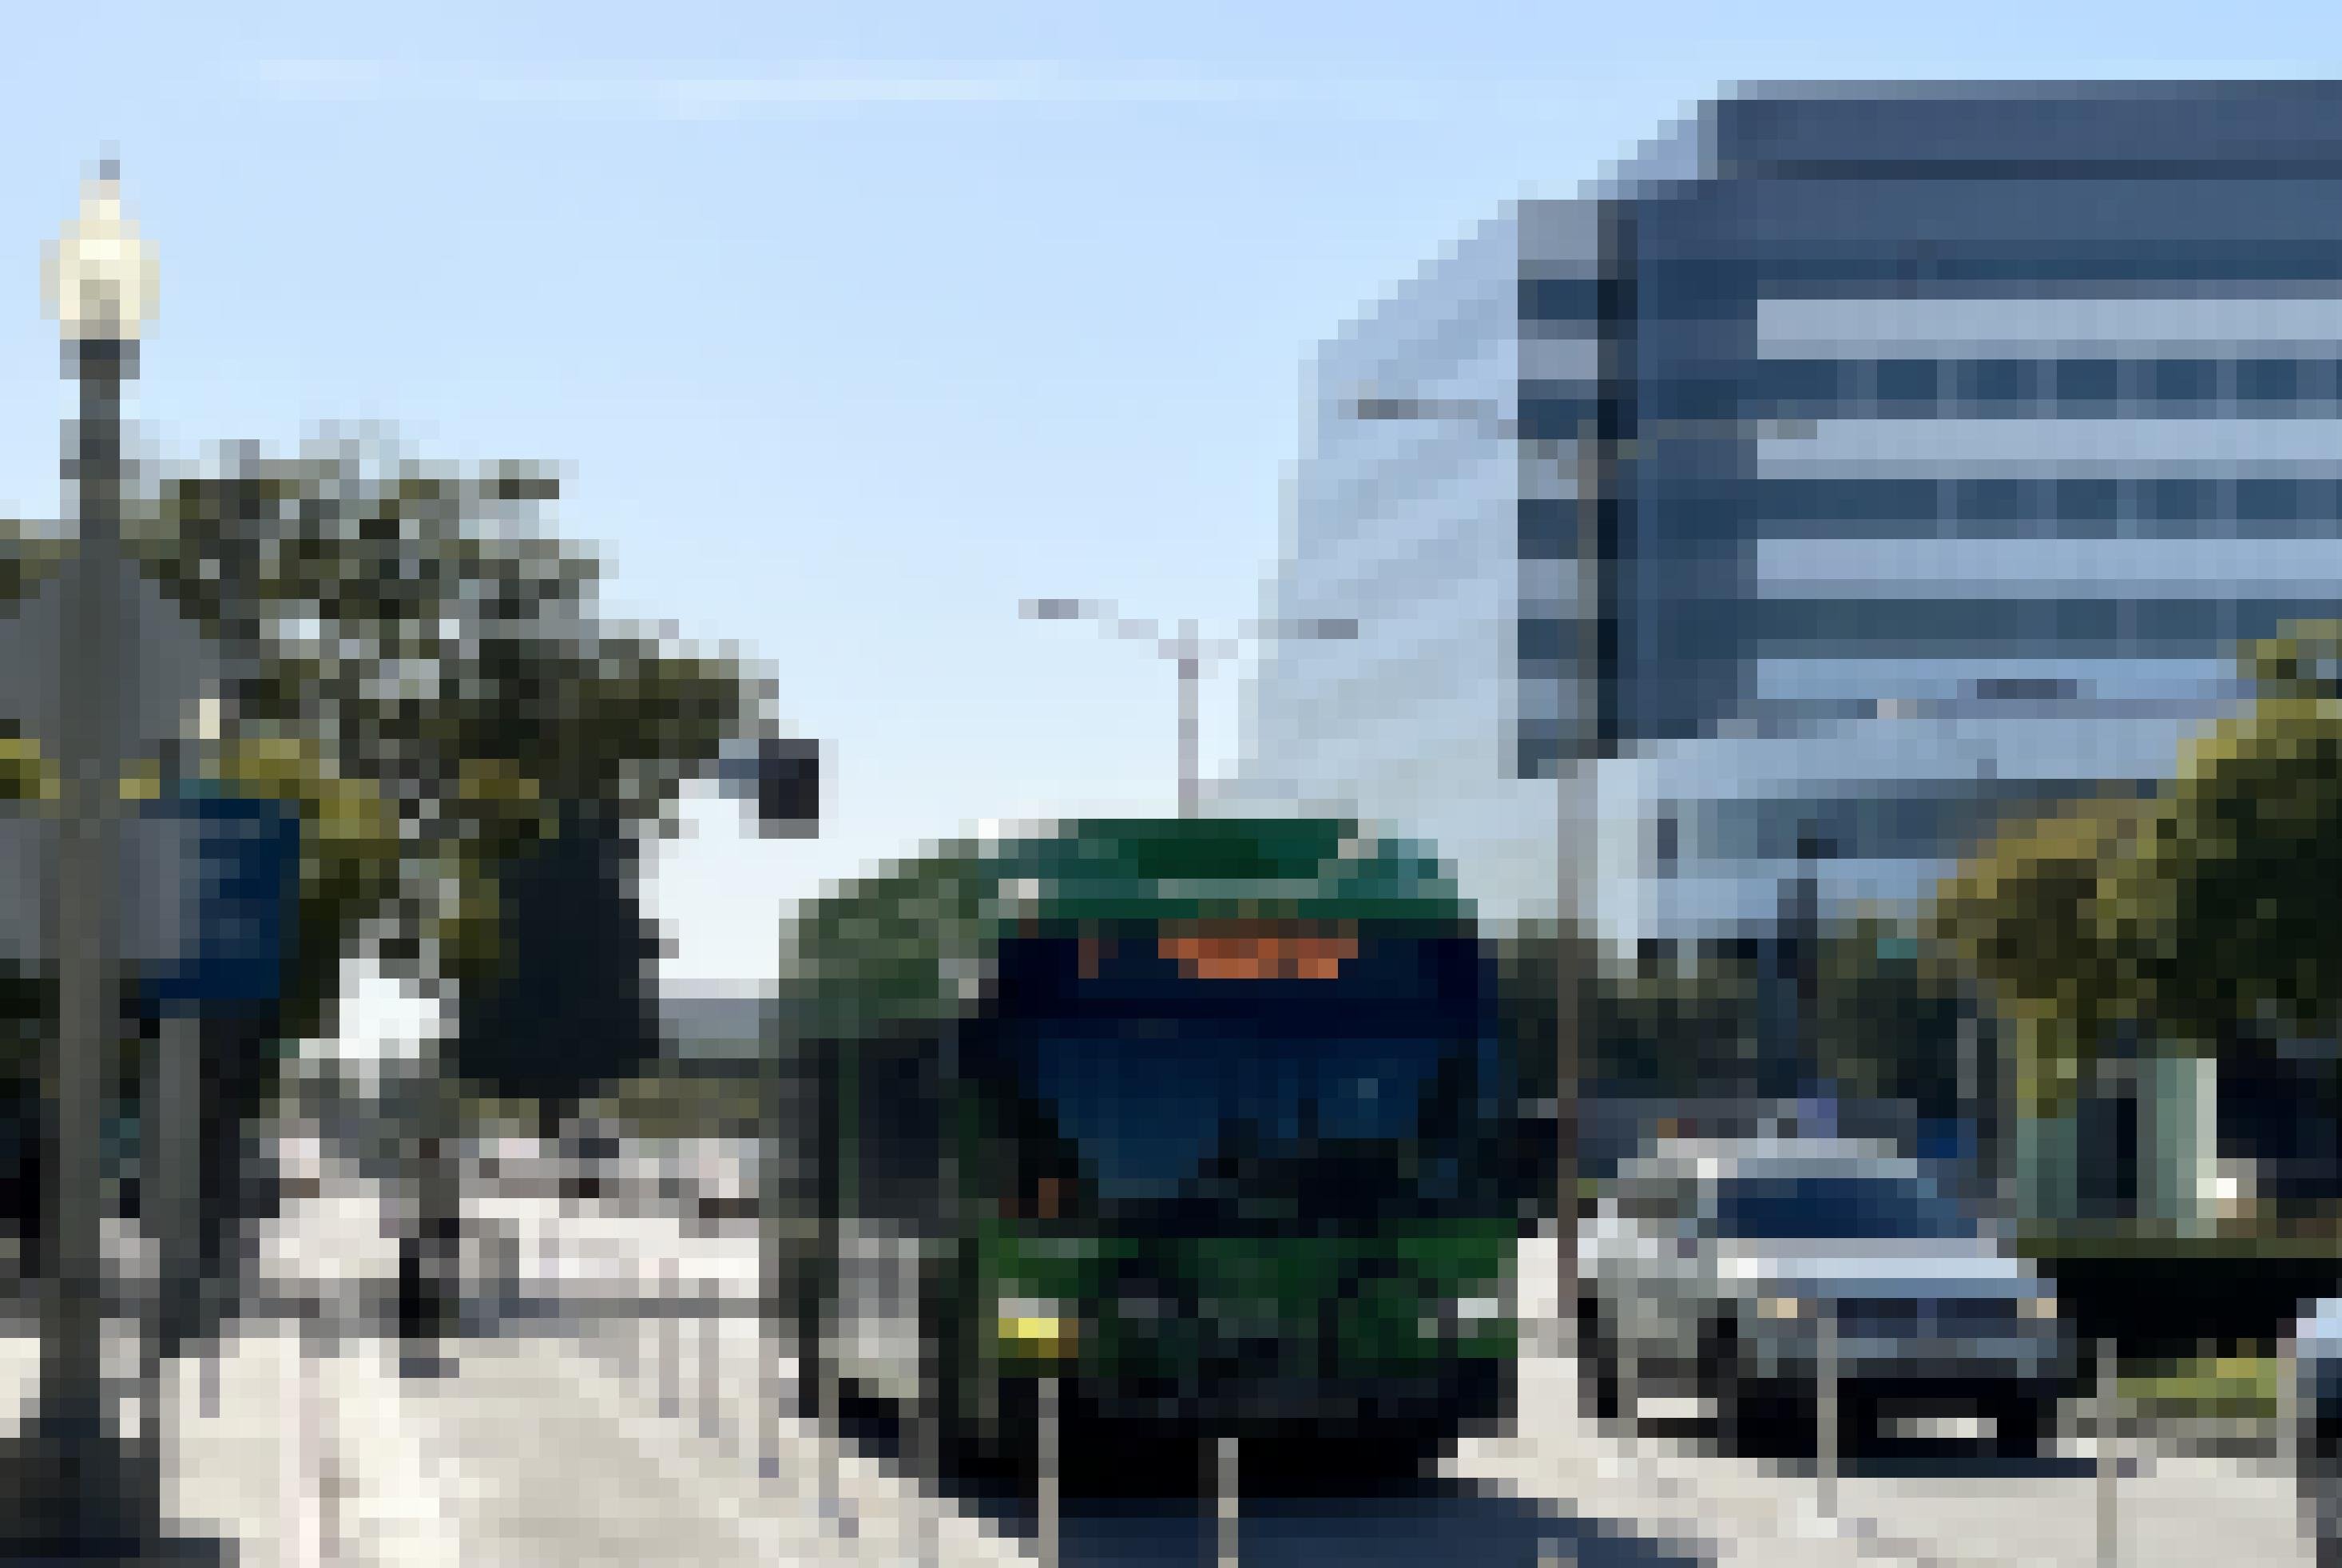 Ein Fahrradfahrer auf einer Radspur. Ein Bus auf der Busspur. Daneben Autos im Stau zwischen Hochhäusern auf der rechten Seite und Bäumen auf der linken.